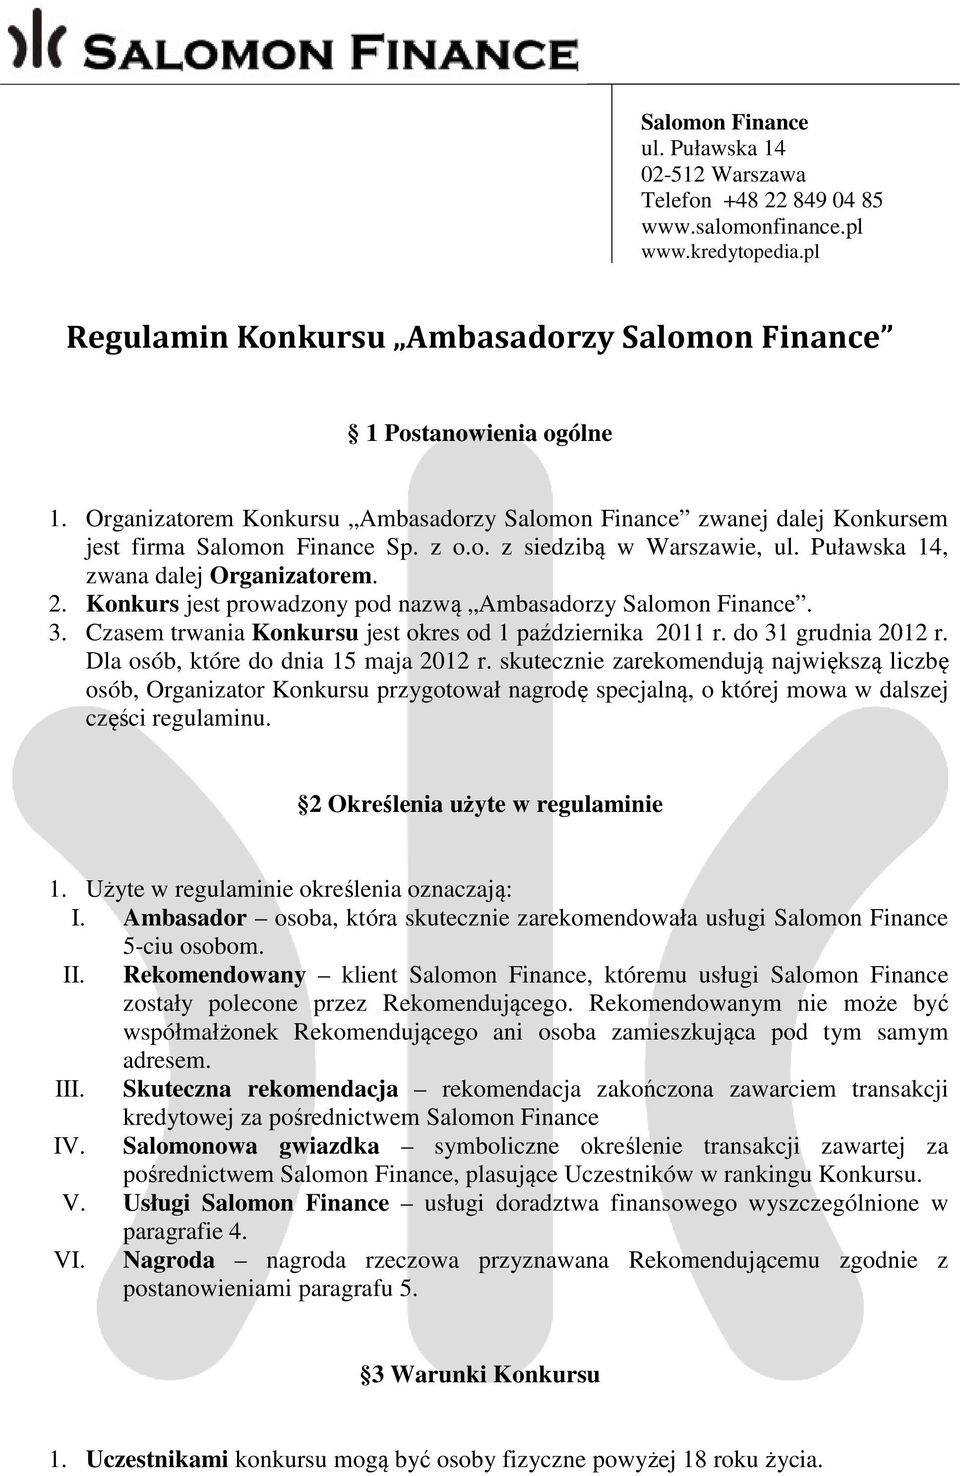 Konkurs jest prowadzony pod nazwą Ambasadorzy Salomon Finance. 3. Czasem trwania Konkursu jest okres od 1 października 2011 r. do 31 grudnia 2012 r. Dla osób, które do dnia 15 maja 2012 r.